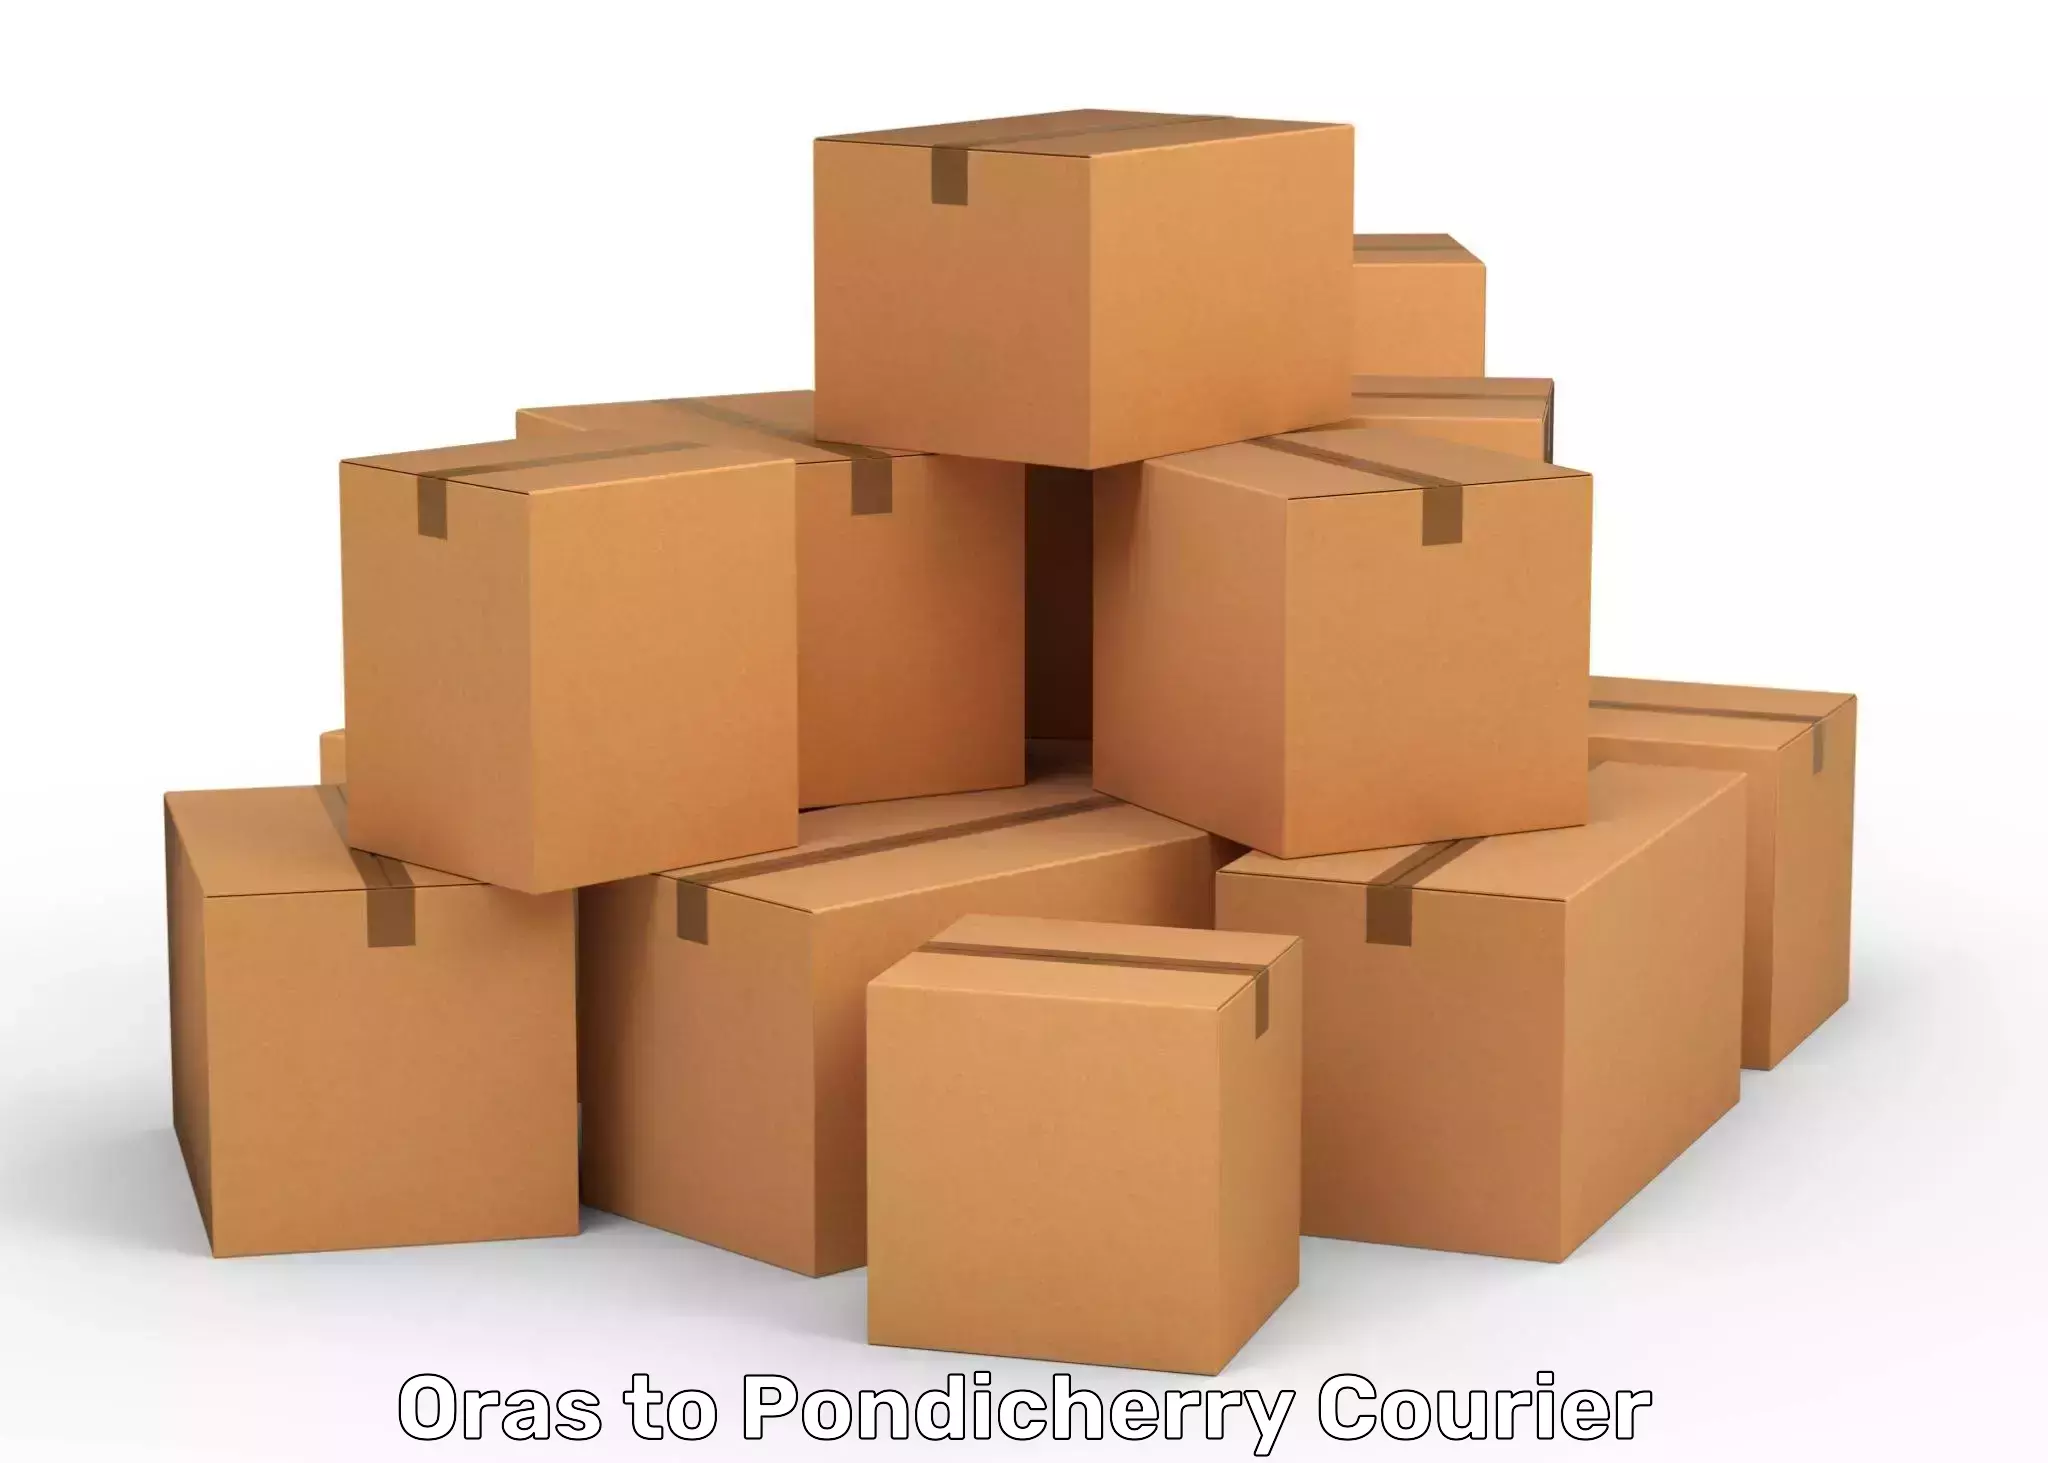 Modern parcel services Oras to Pondicherry